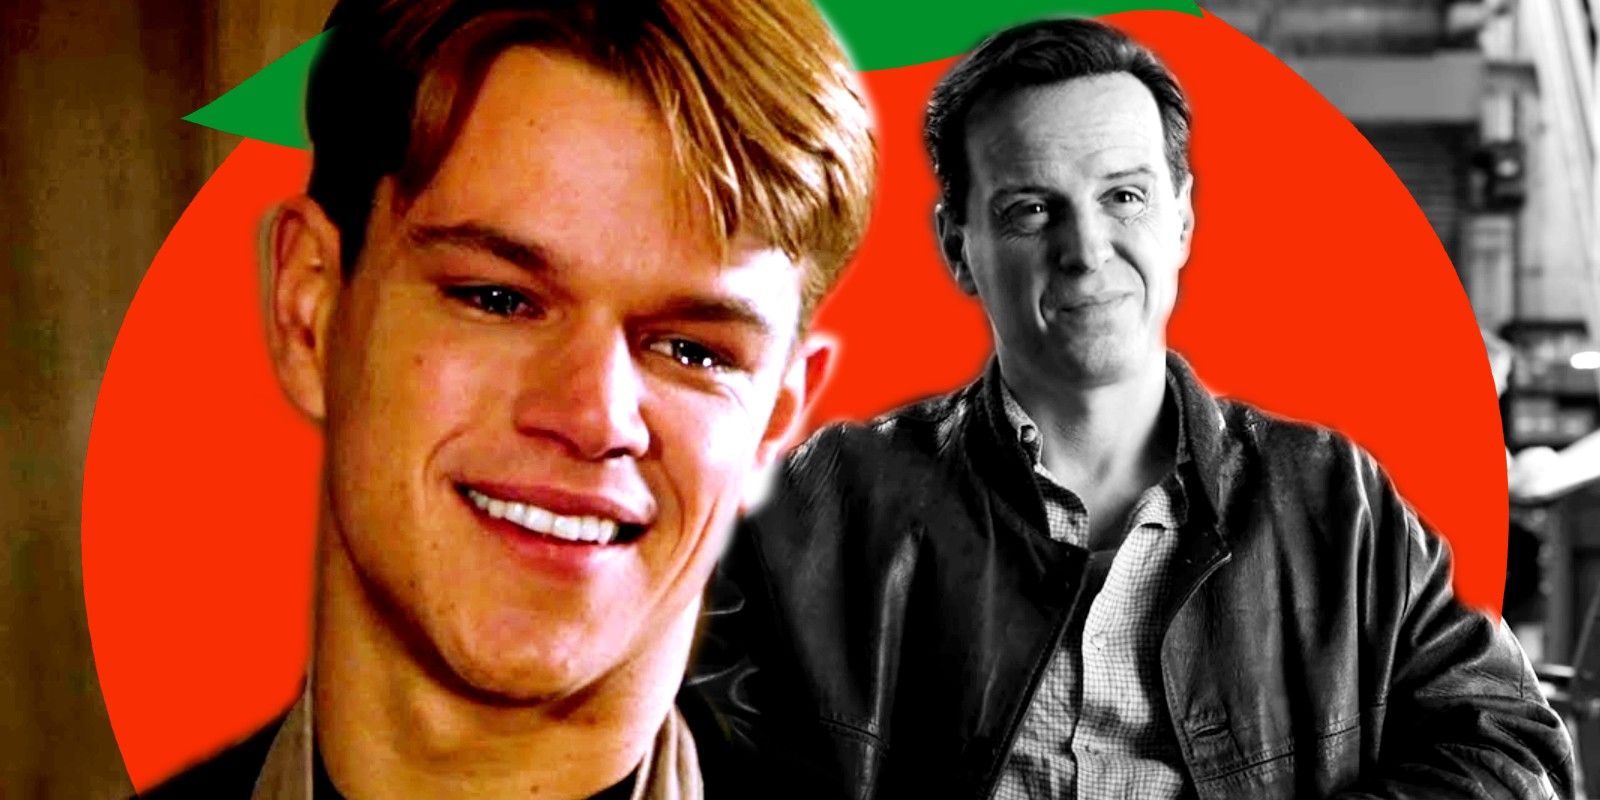 El nuevo thriller psicológico de Netflix está superando la versión de Matt Damon en Rotten Tomatoes